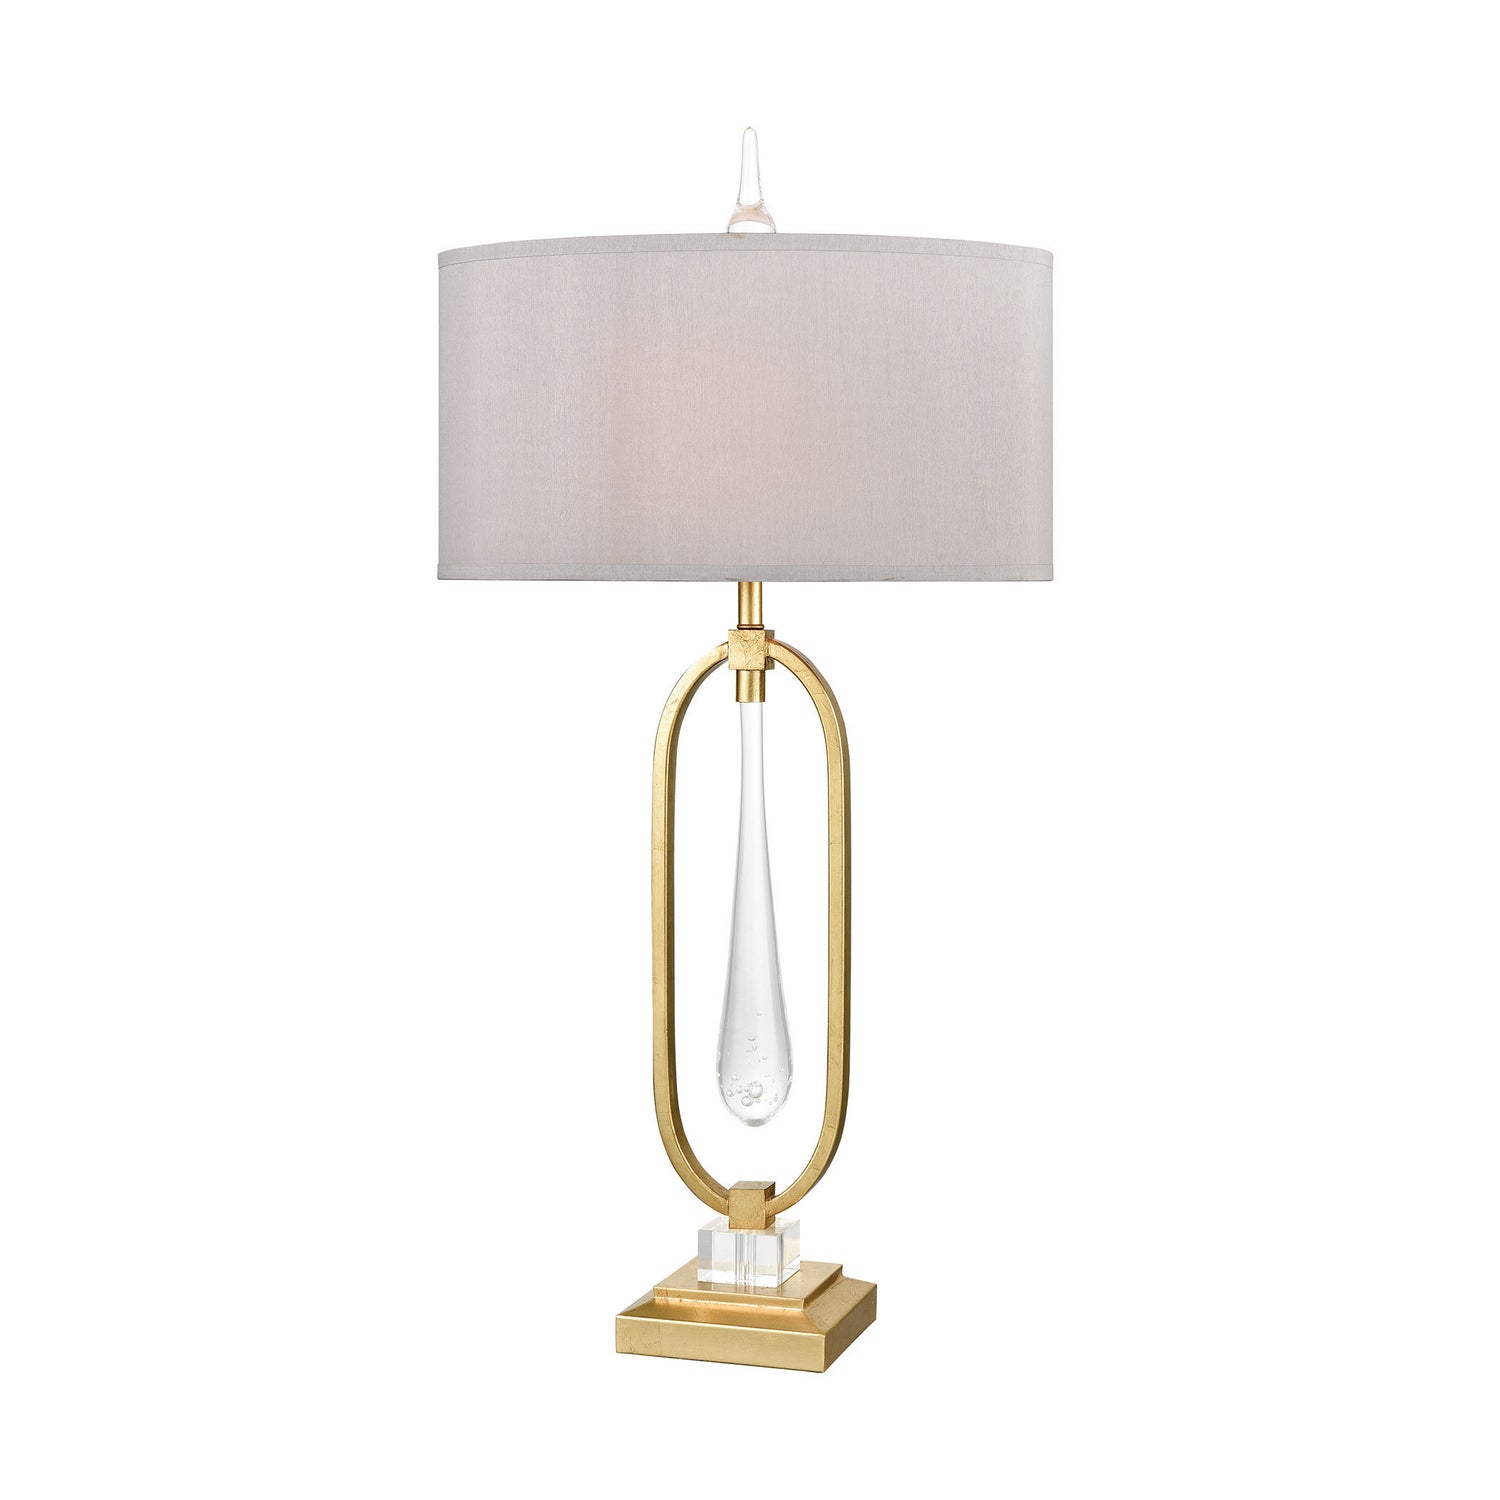 ELK Home - D3638 - One Light Table Lamp - Spring Loaded - Gold Leaf